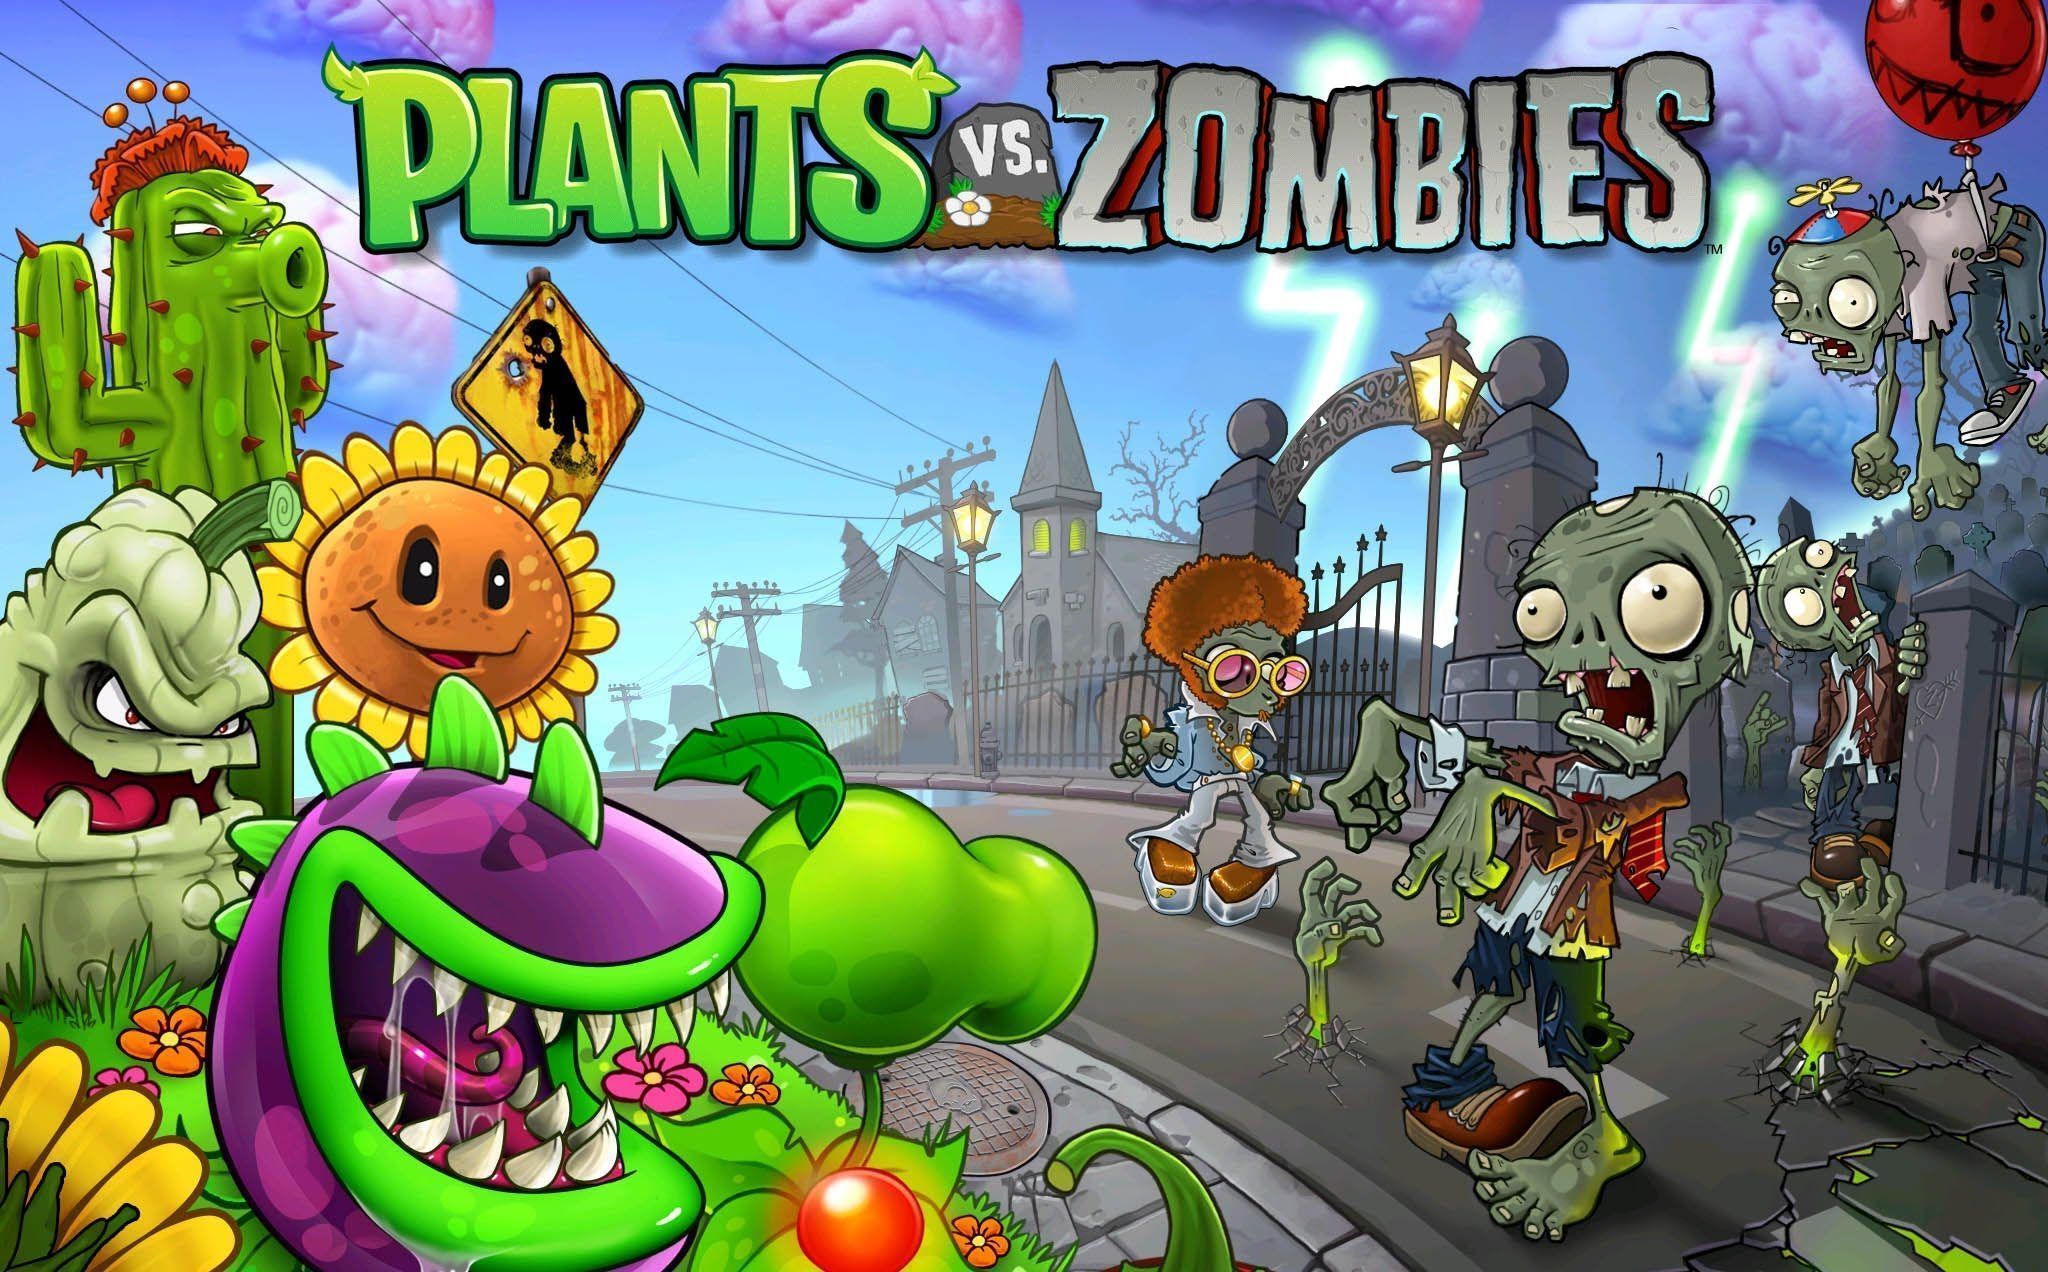 plants vs zombies 1